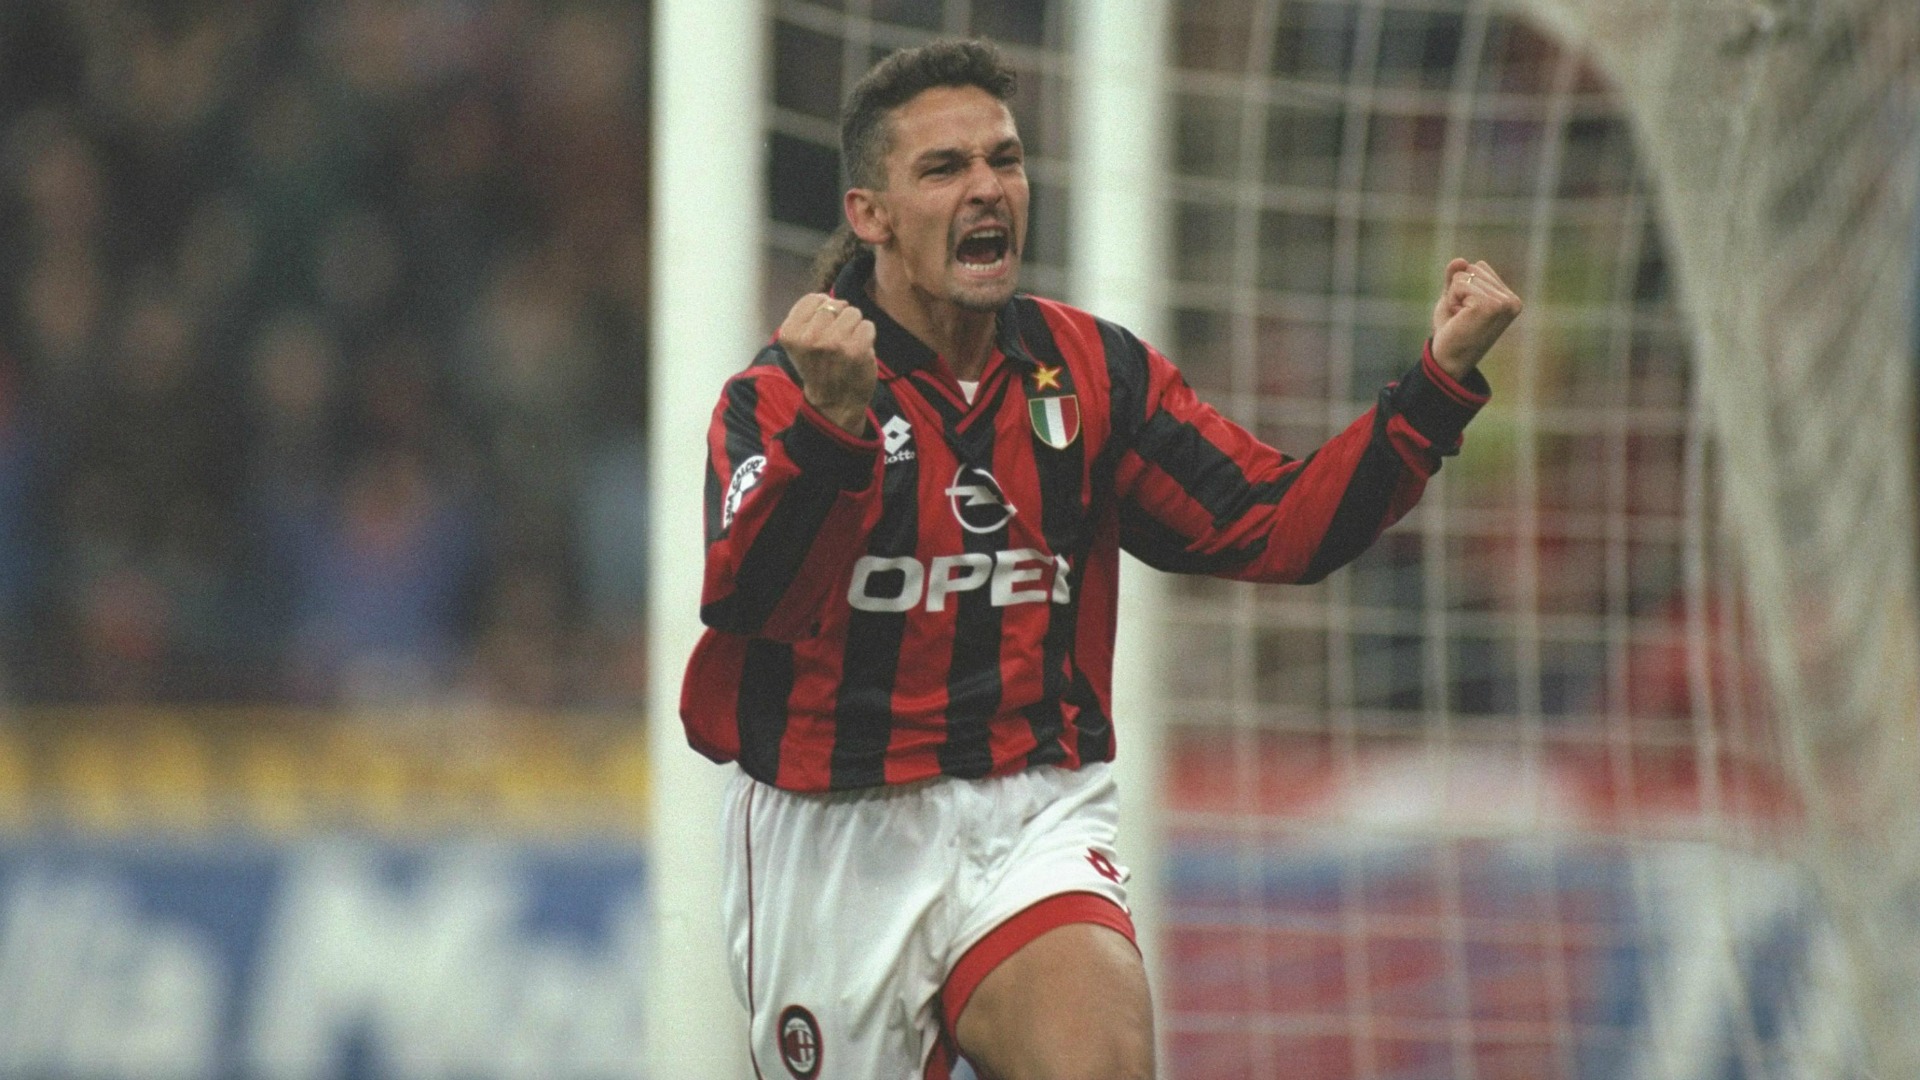 Roberto Baggio Milan - Goal.com1920 x 1080